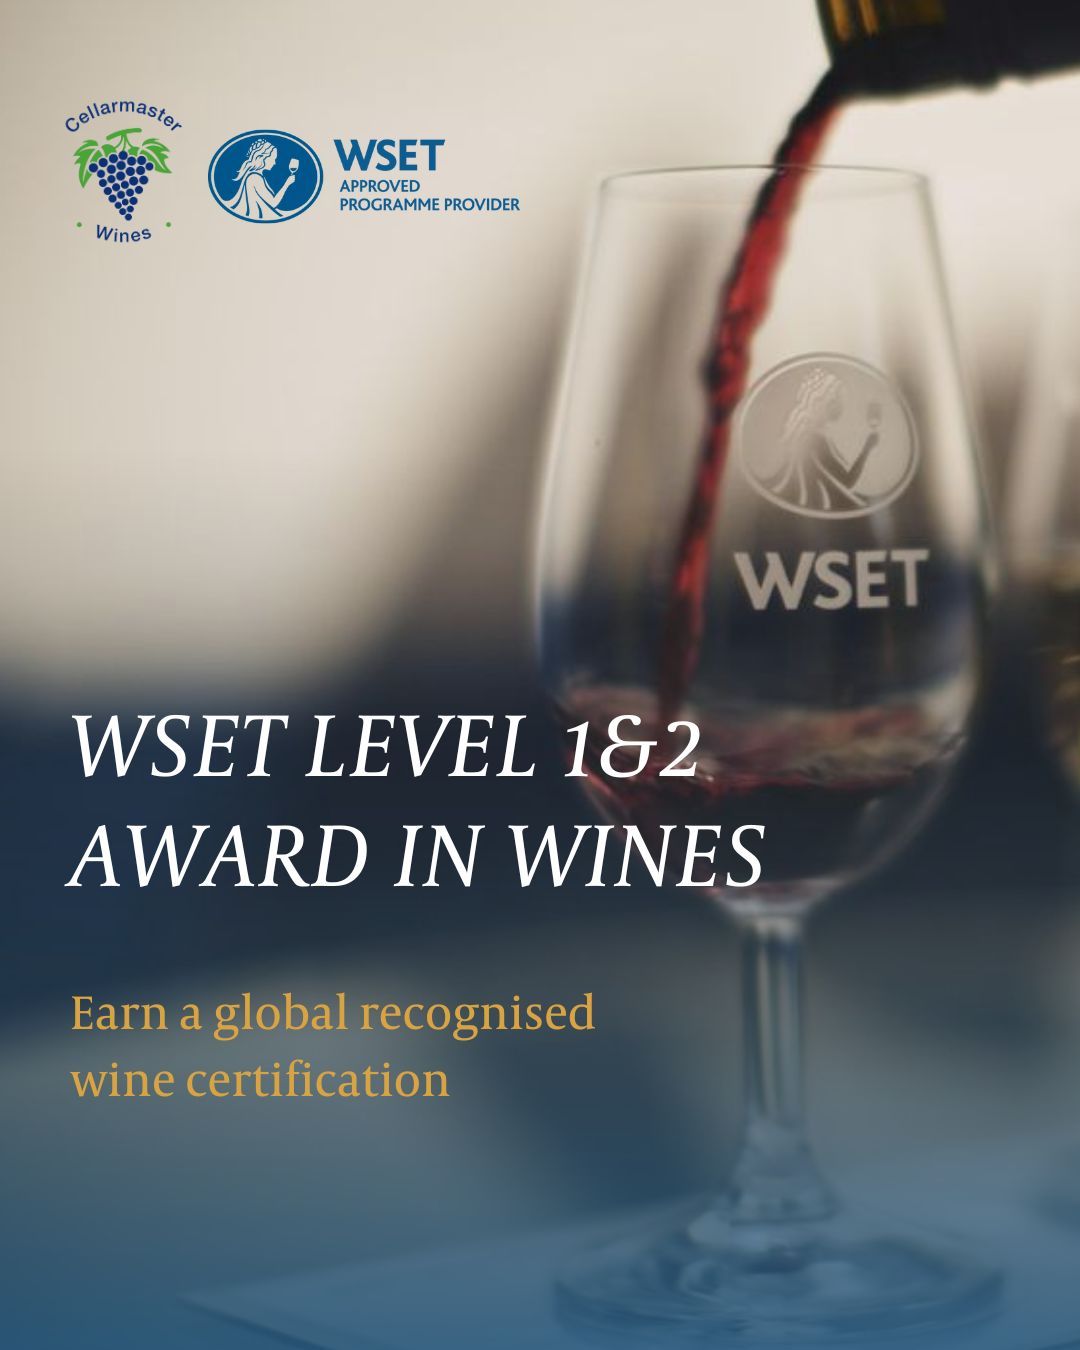 WSET | Wine Award Level 1 & 2 Course